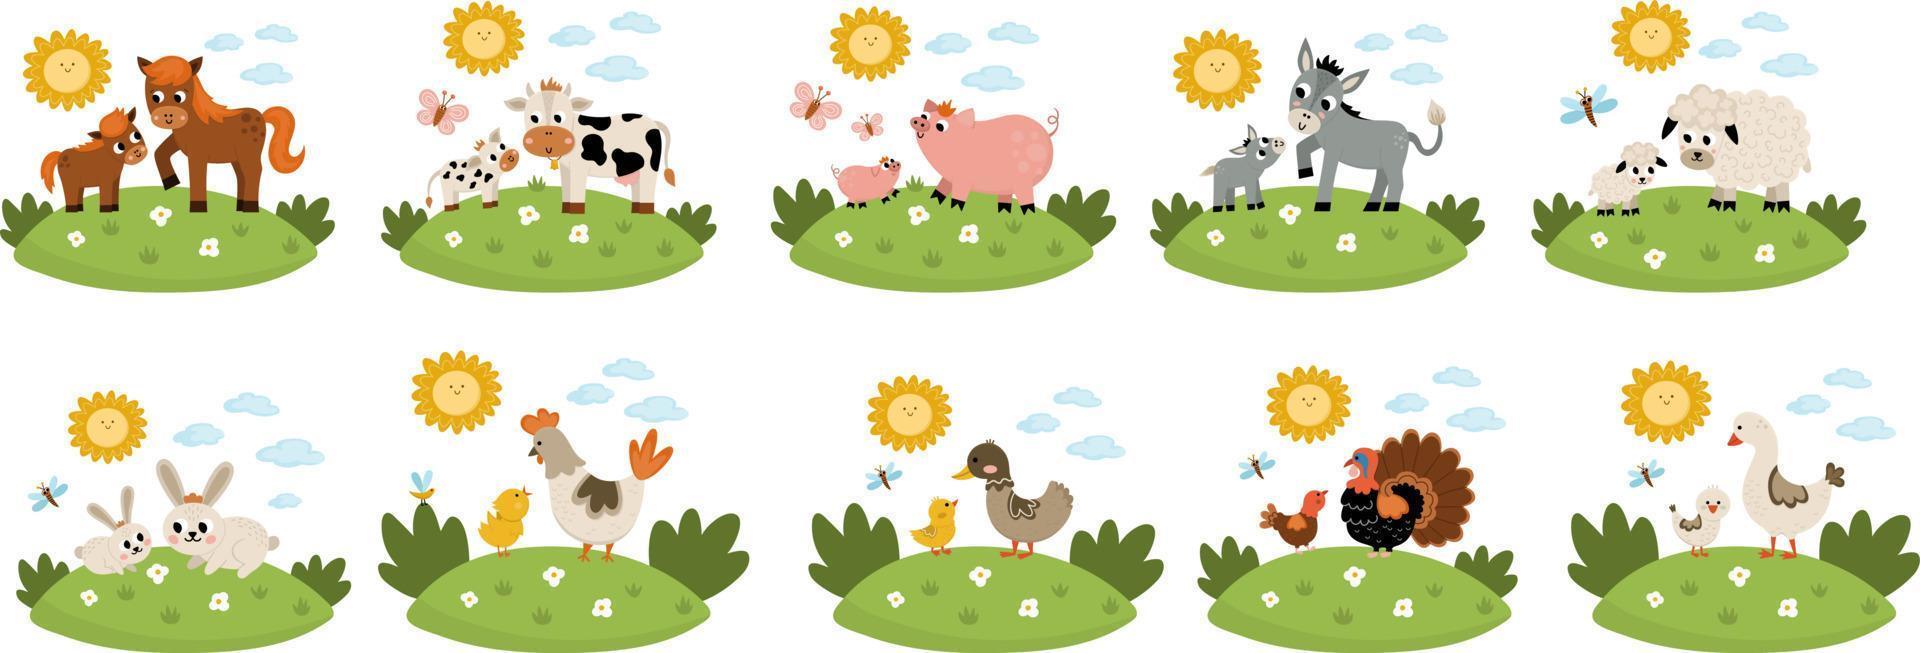 conjunto de escenas de animales de granja vectorial. colección con vaca, caballo, cabra, oveja, pato, gallina, cerdo y sus crías. lindo país madre y bebé ilustración con fondo de hierba, sol, nubes vector